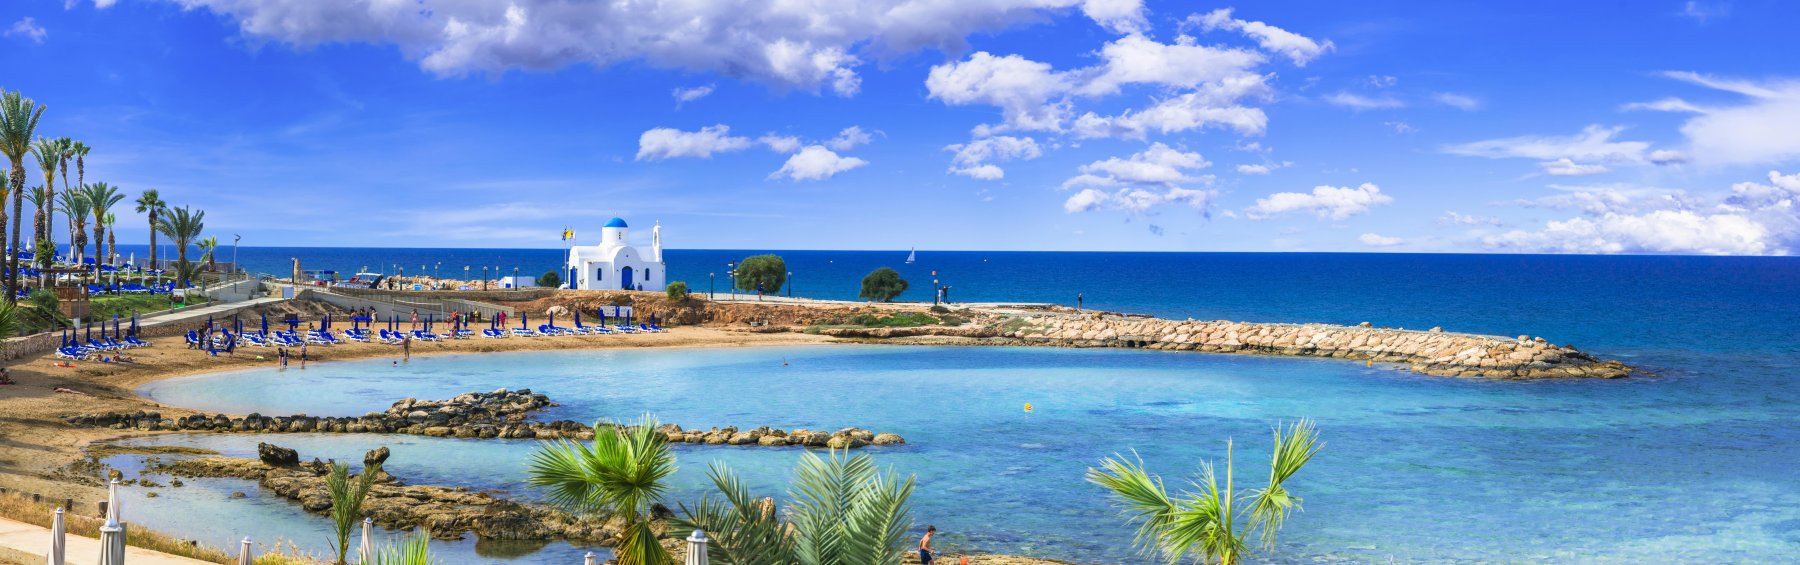 Ferienhäuser für 14 Personen auf Zypern